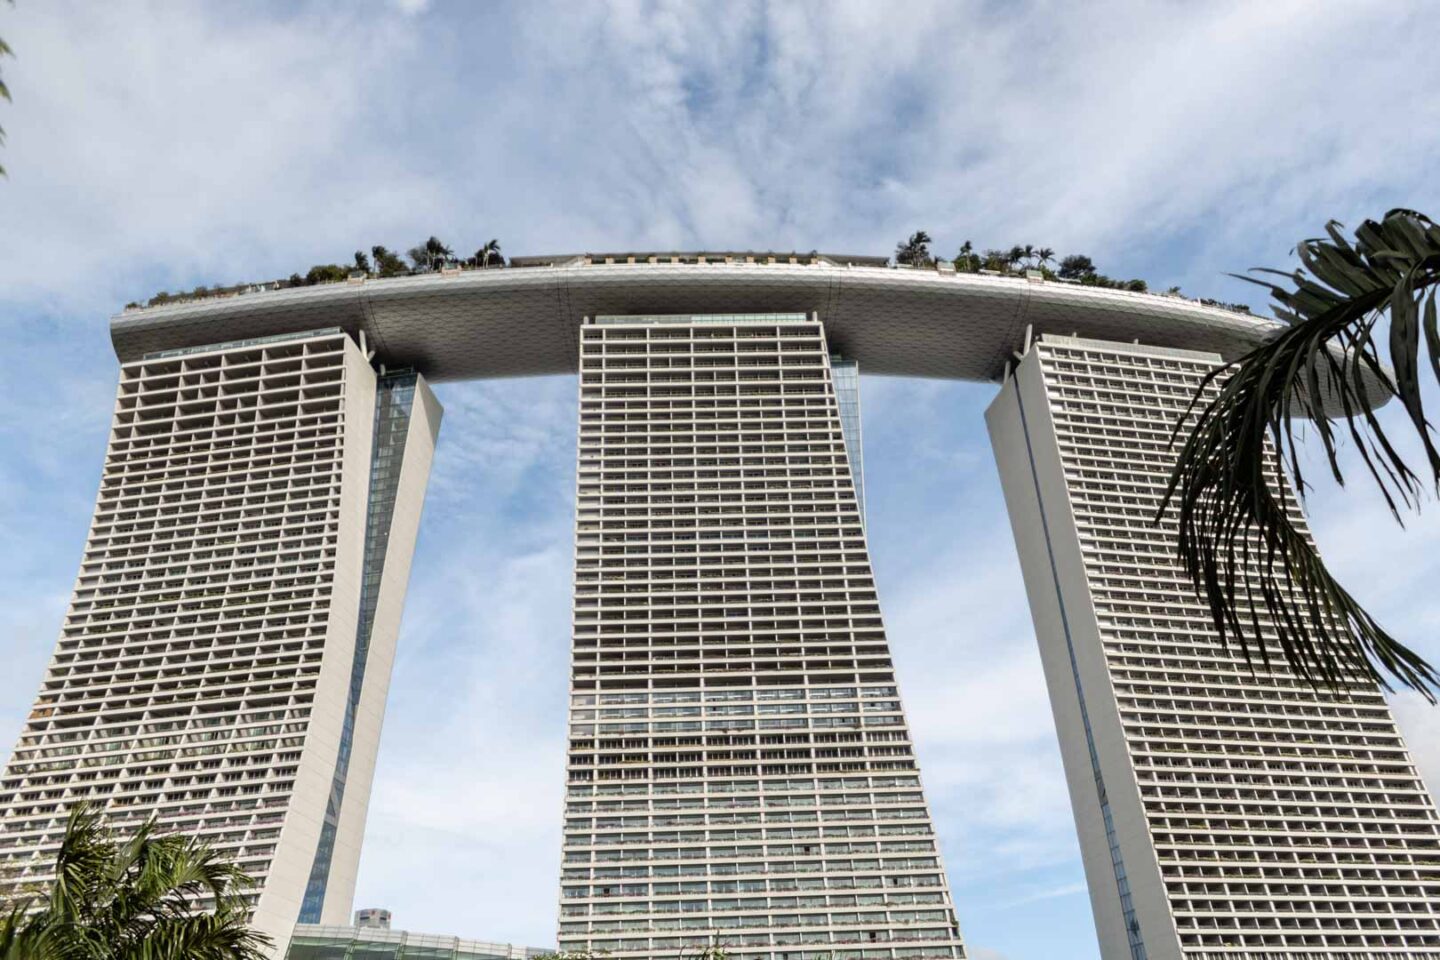 Marina Bay Sands Hotel Skypark Observation Deck